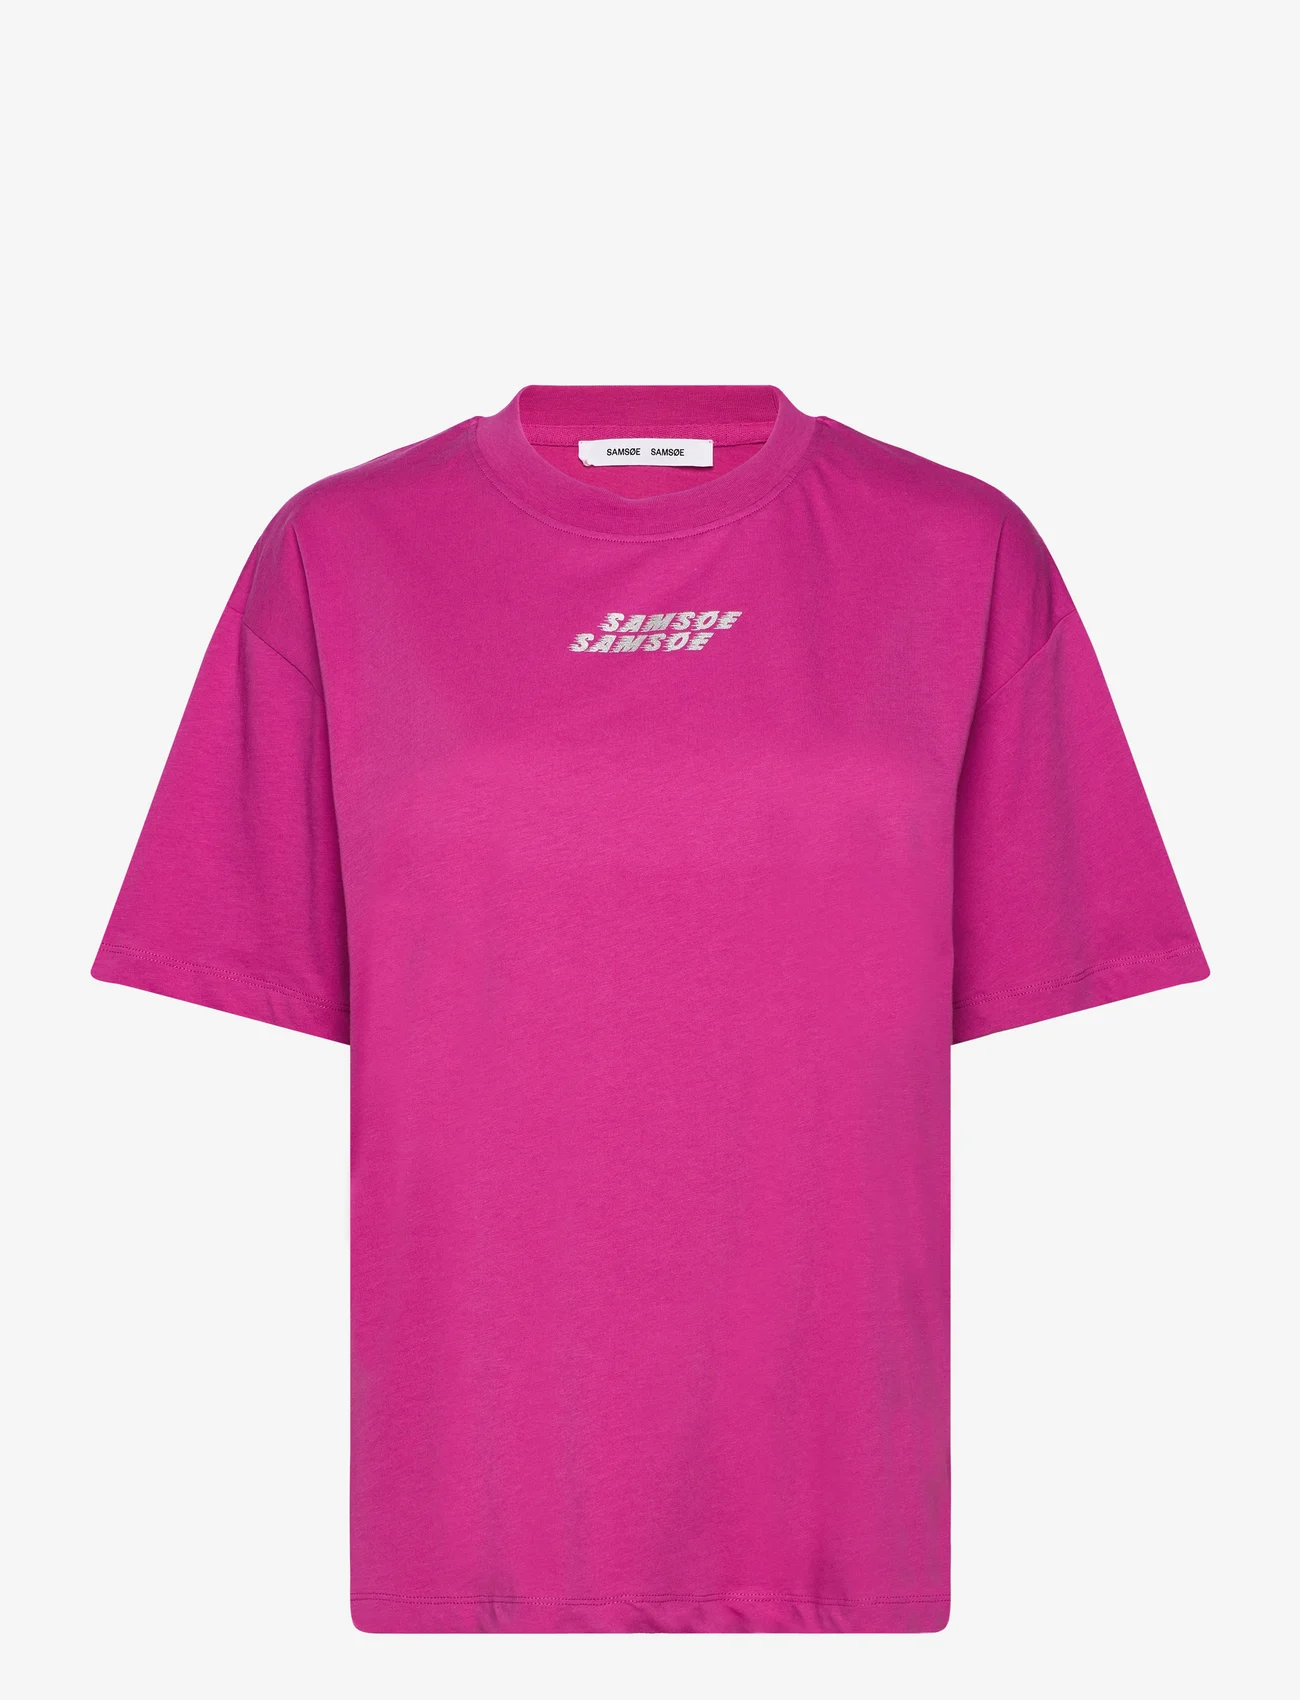 Samsøe Samsøe - Eira t-shirt 10379 - t-shirt & tops - rose violet - 0